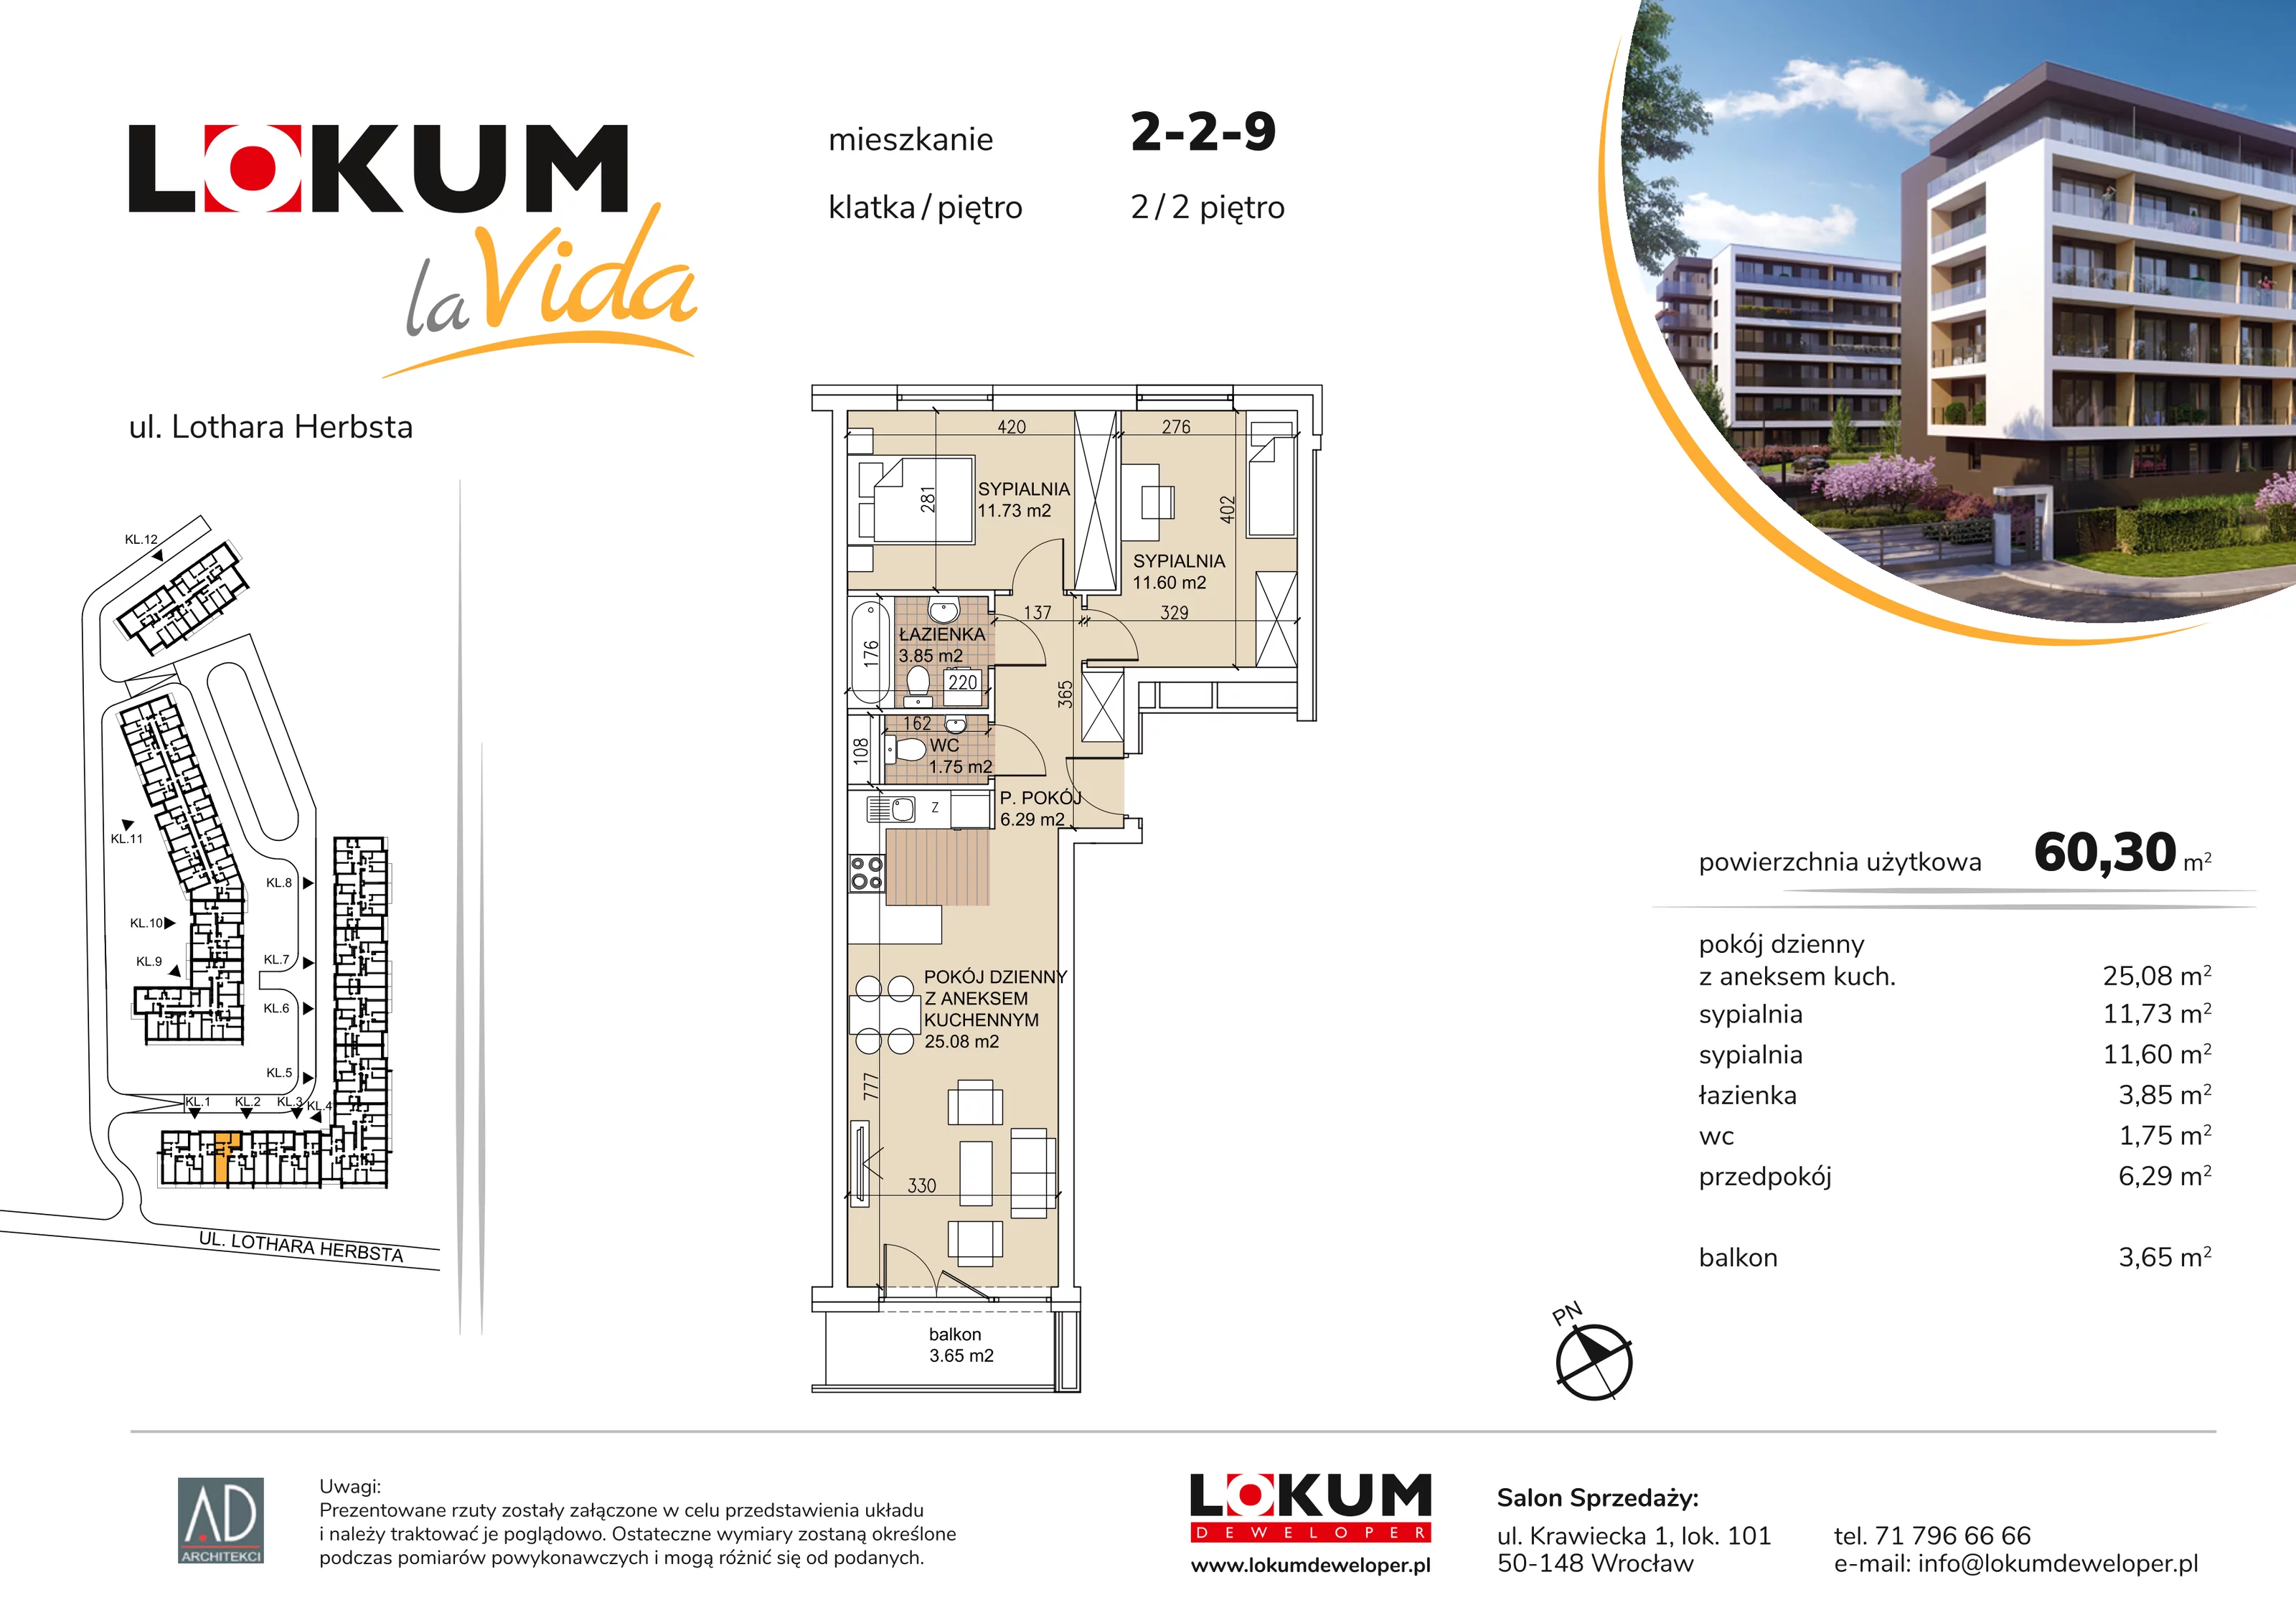 Mieszkanie 60,30 m², piętro 2, oferta nr 2-2-9, Lokum la Vida, Wrocław, Sołtysowice, ul. Lothara Herbsta